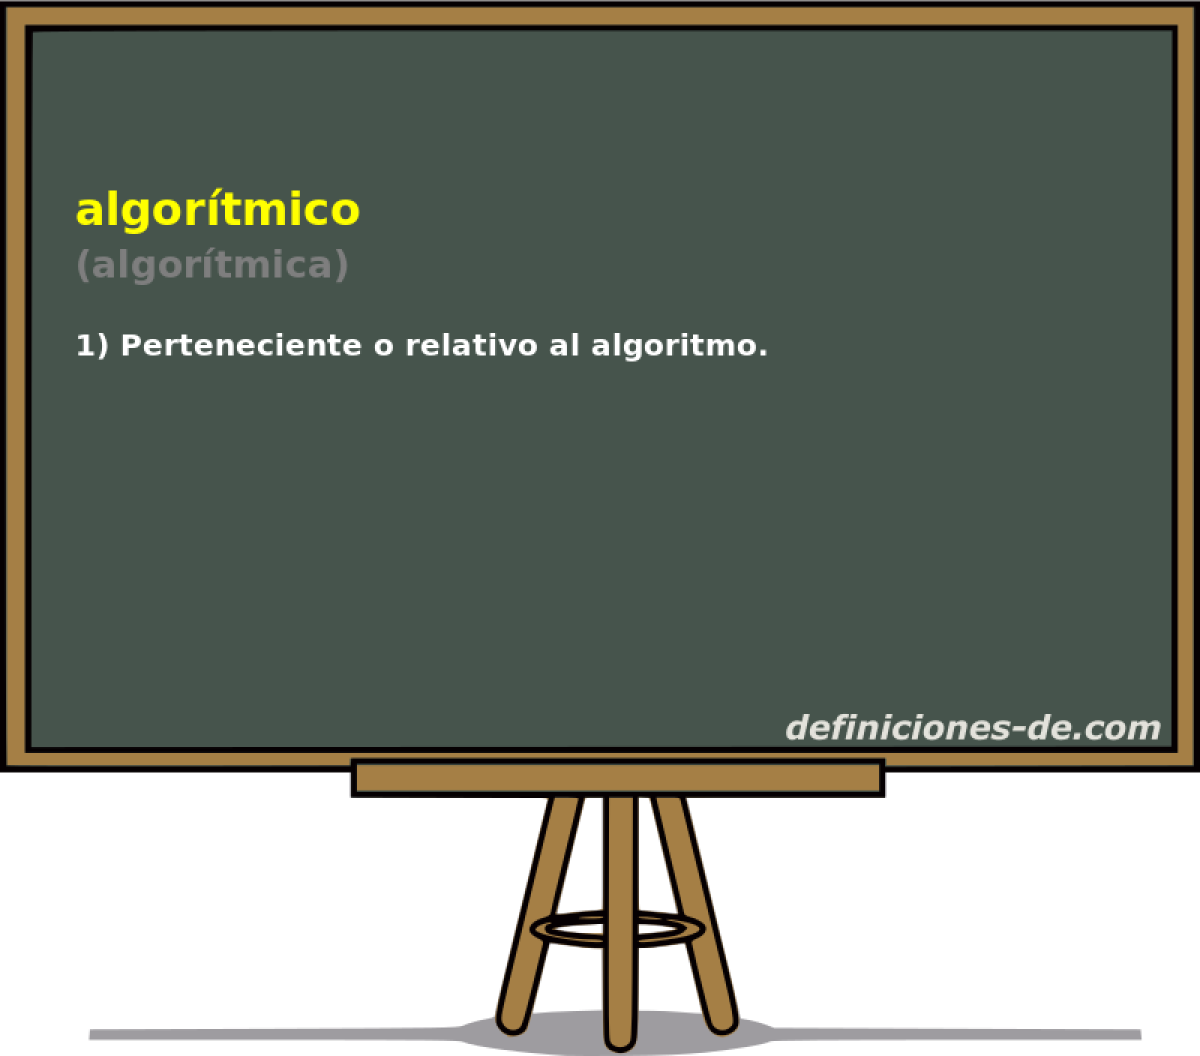 algortmico (algortmica)